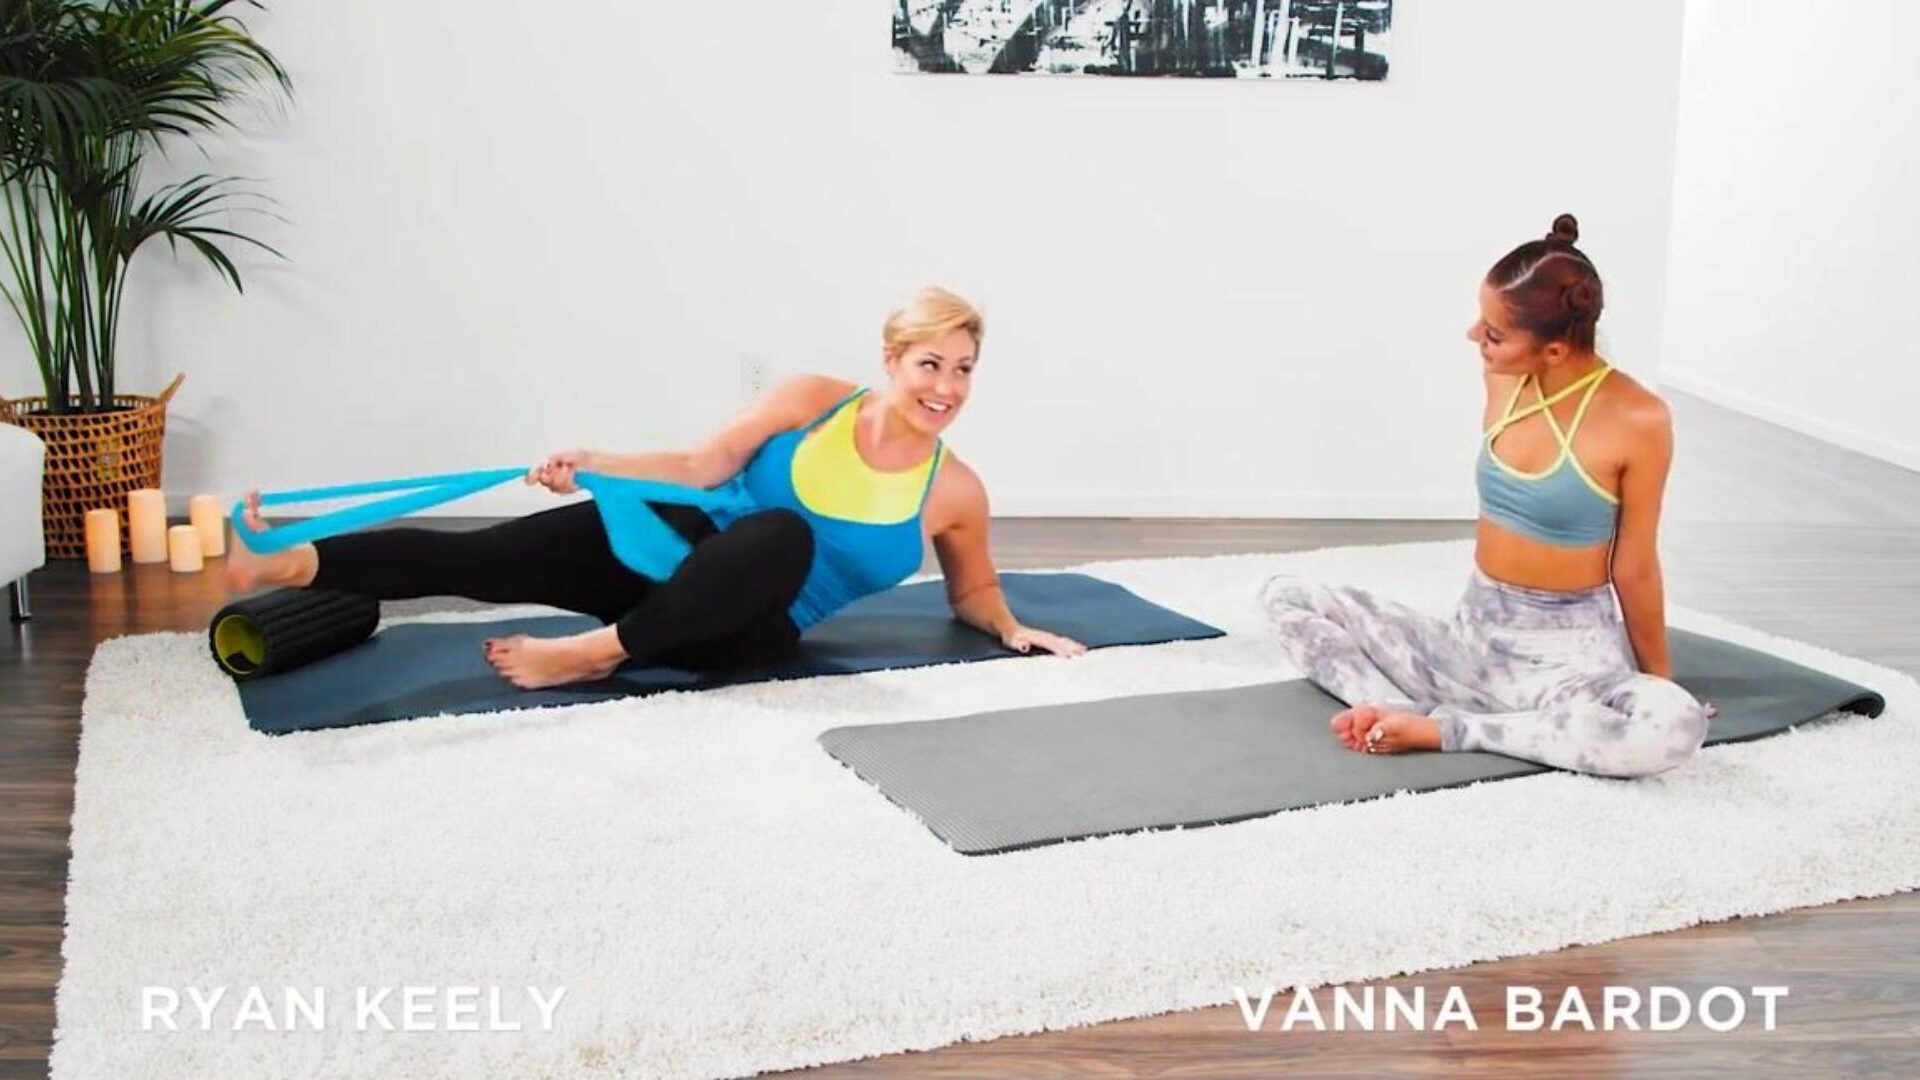 vanna bardot are un antrenament de yoga cu degetul cu ryan keely vanna bardot și ryan keely